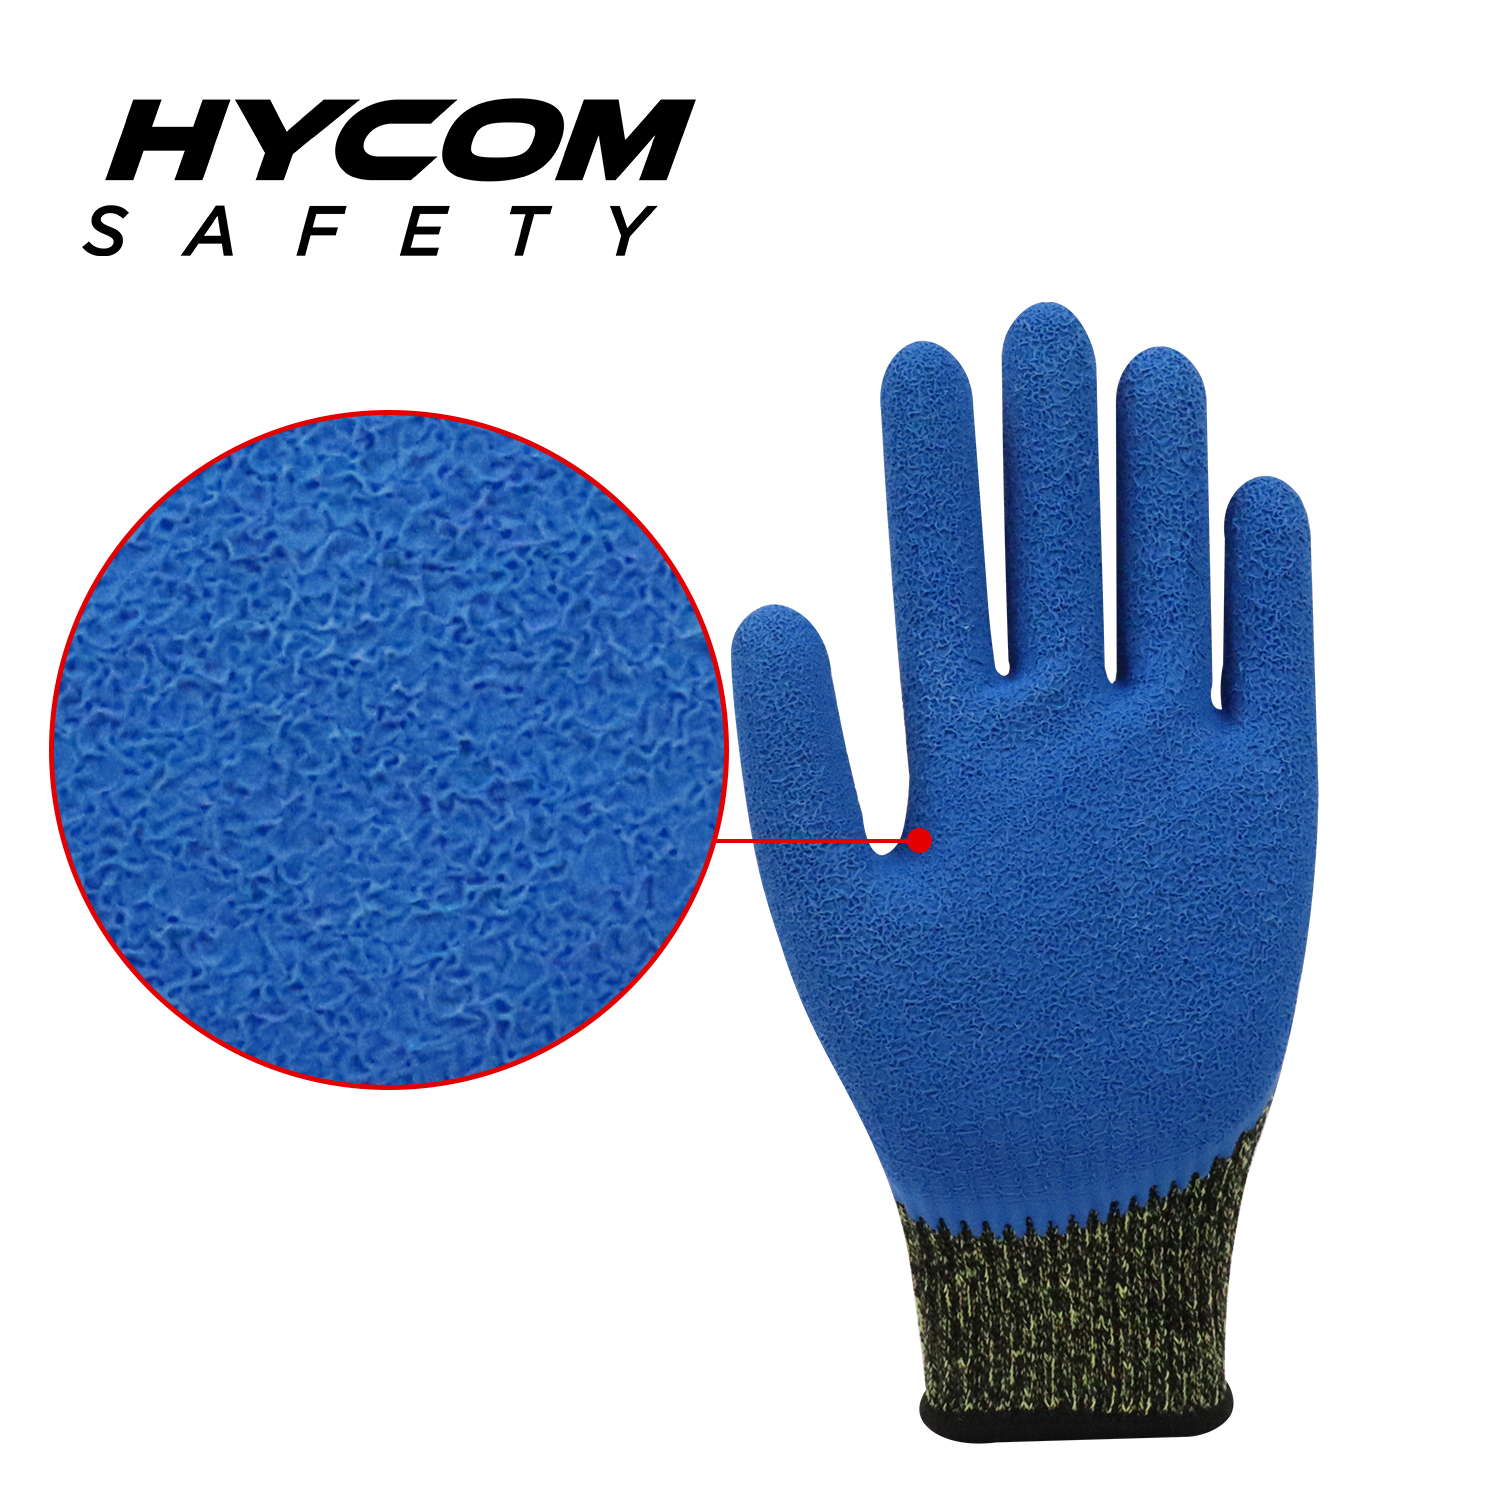 HYCOM Contacto de aramida 10G, alta temperatura, 250 °C/480 F, resistente a cortes con guante de látex arrugado